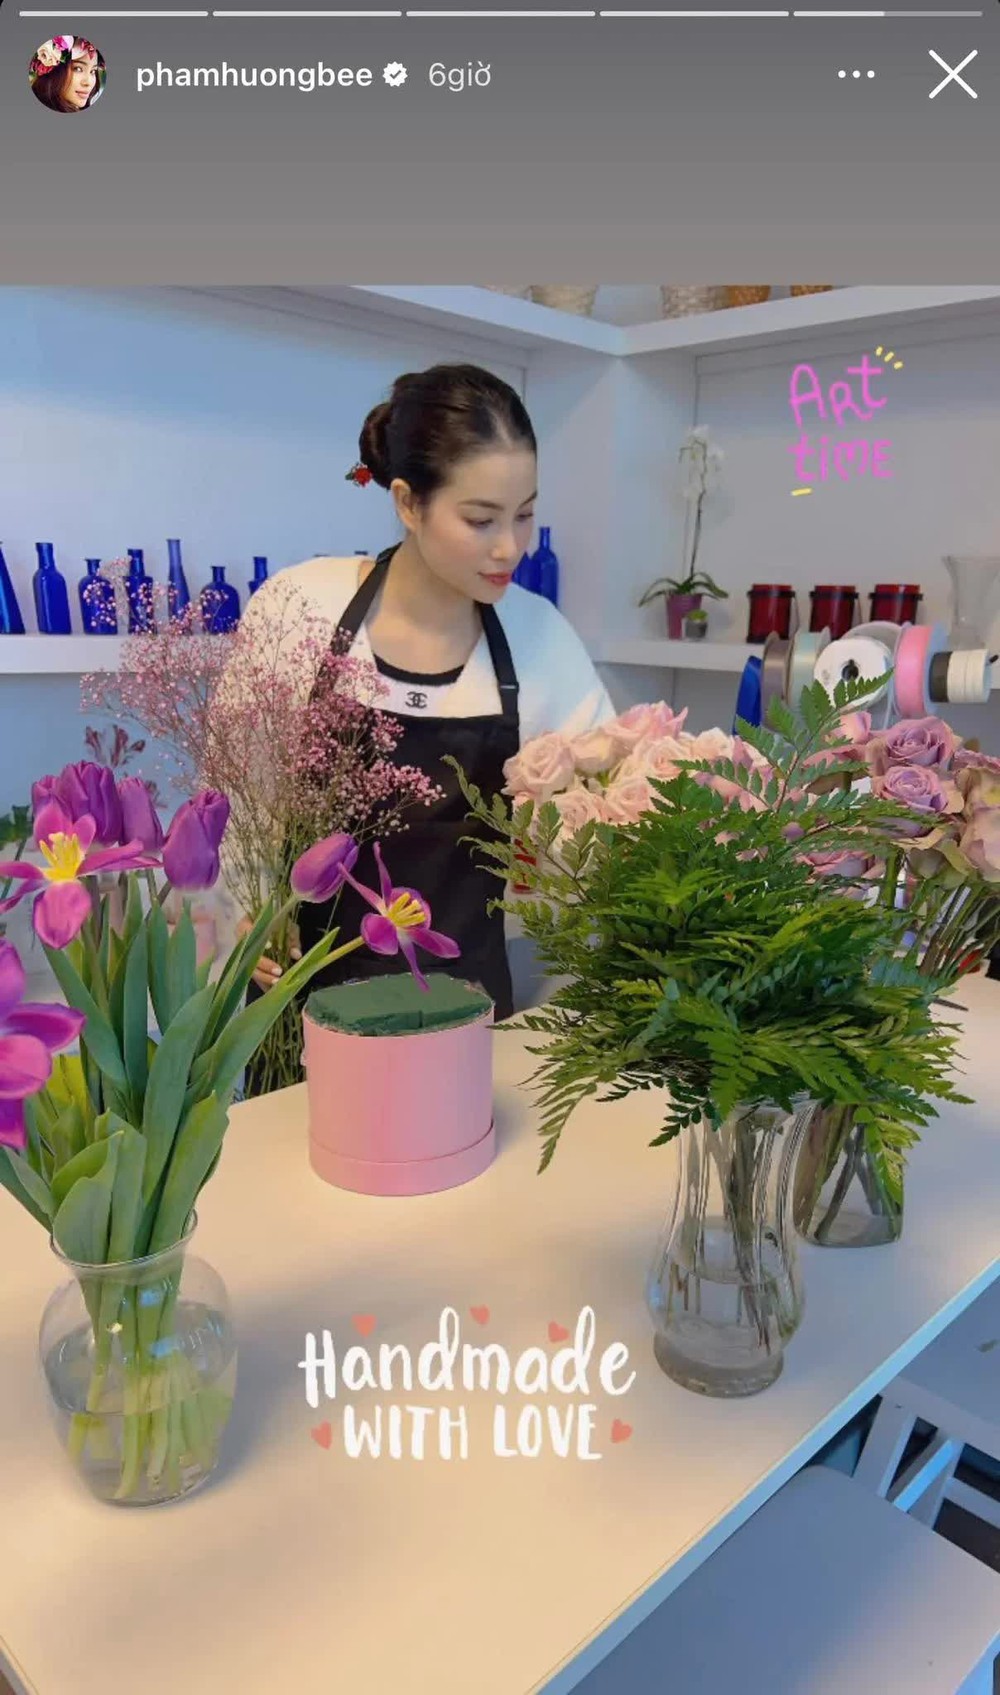 Công việc hiện tại của Phạm Hương trên đất Mỹ: Làm vợ, làm mẹ và làm bà chủ shop hoa tươi - Ảnh 3.